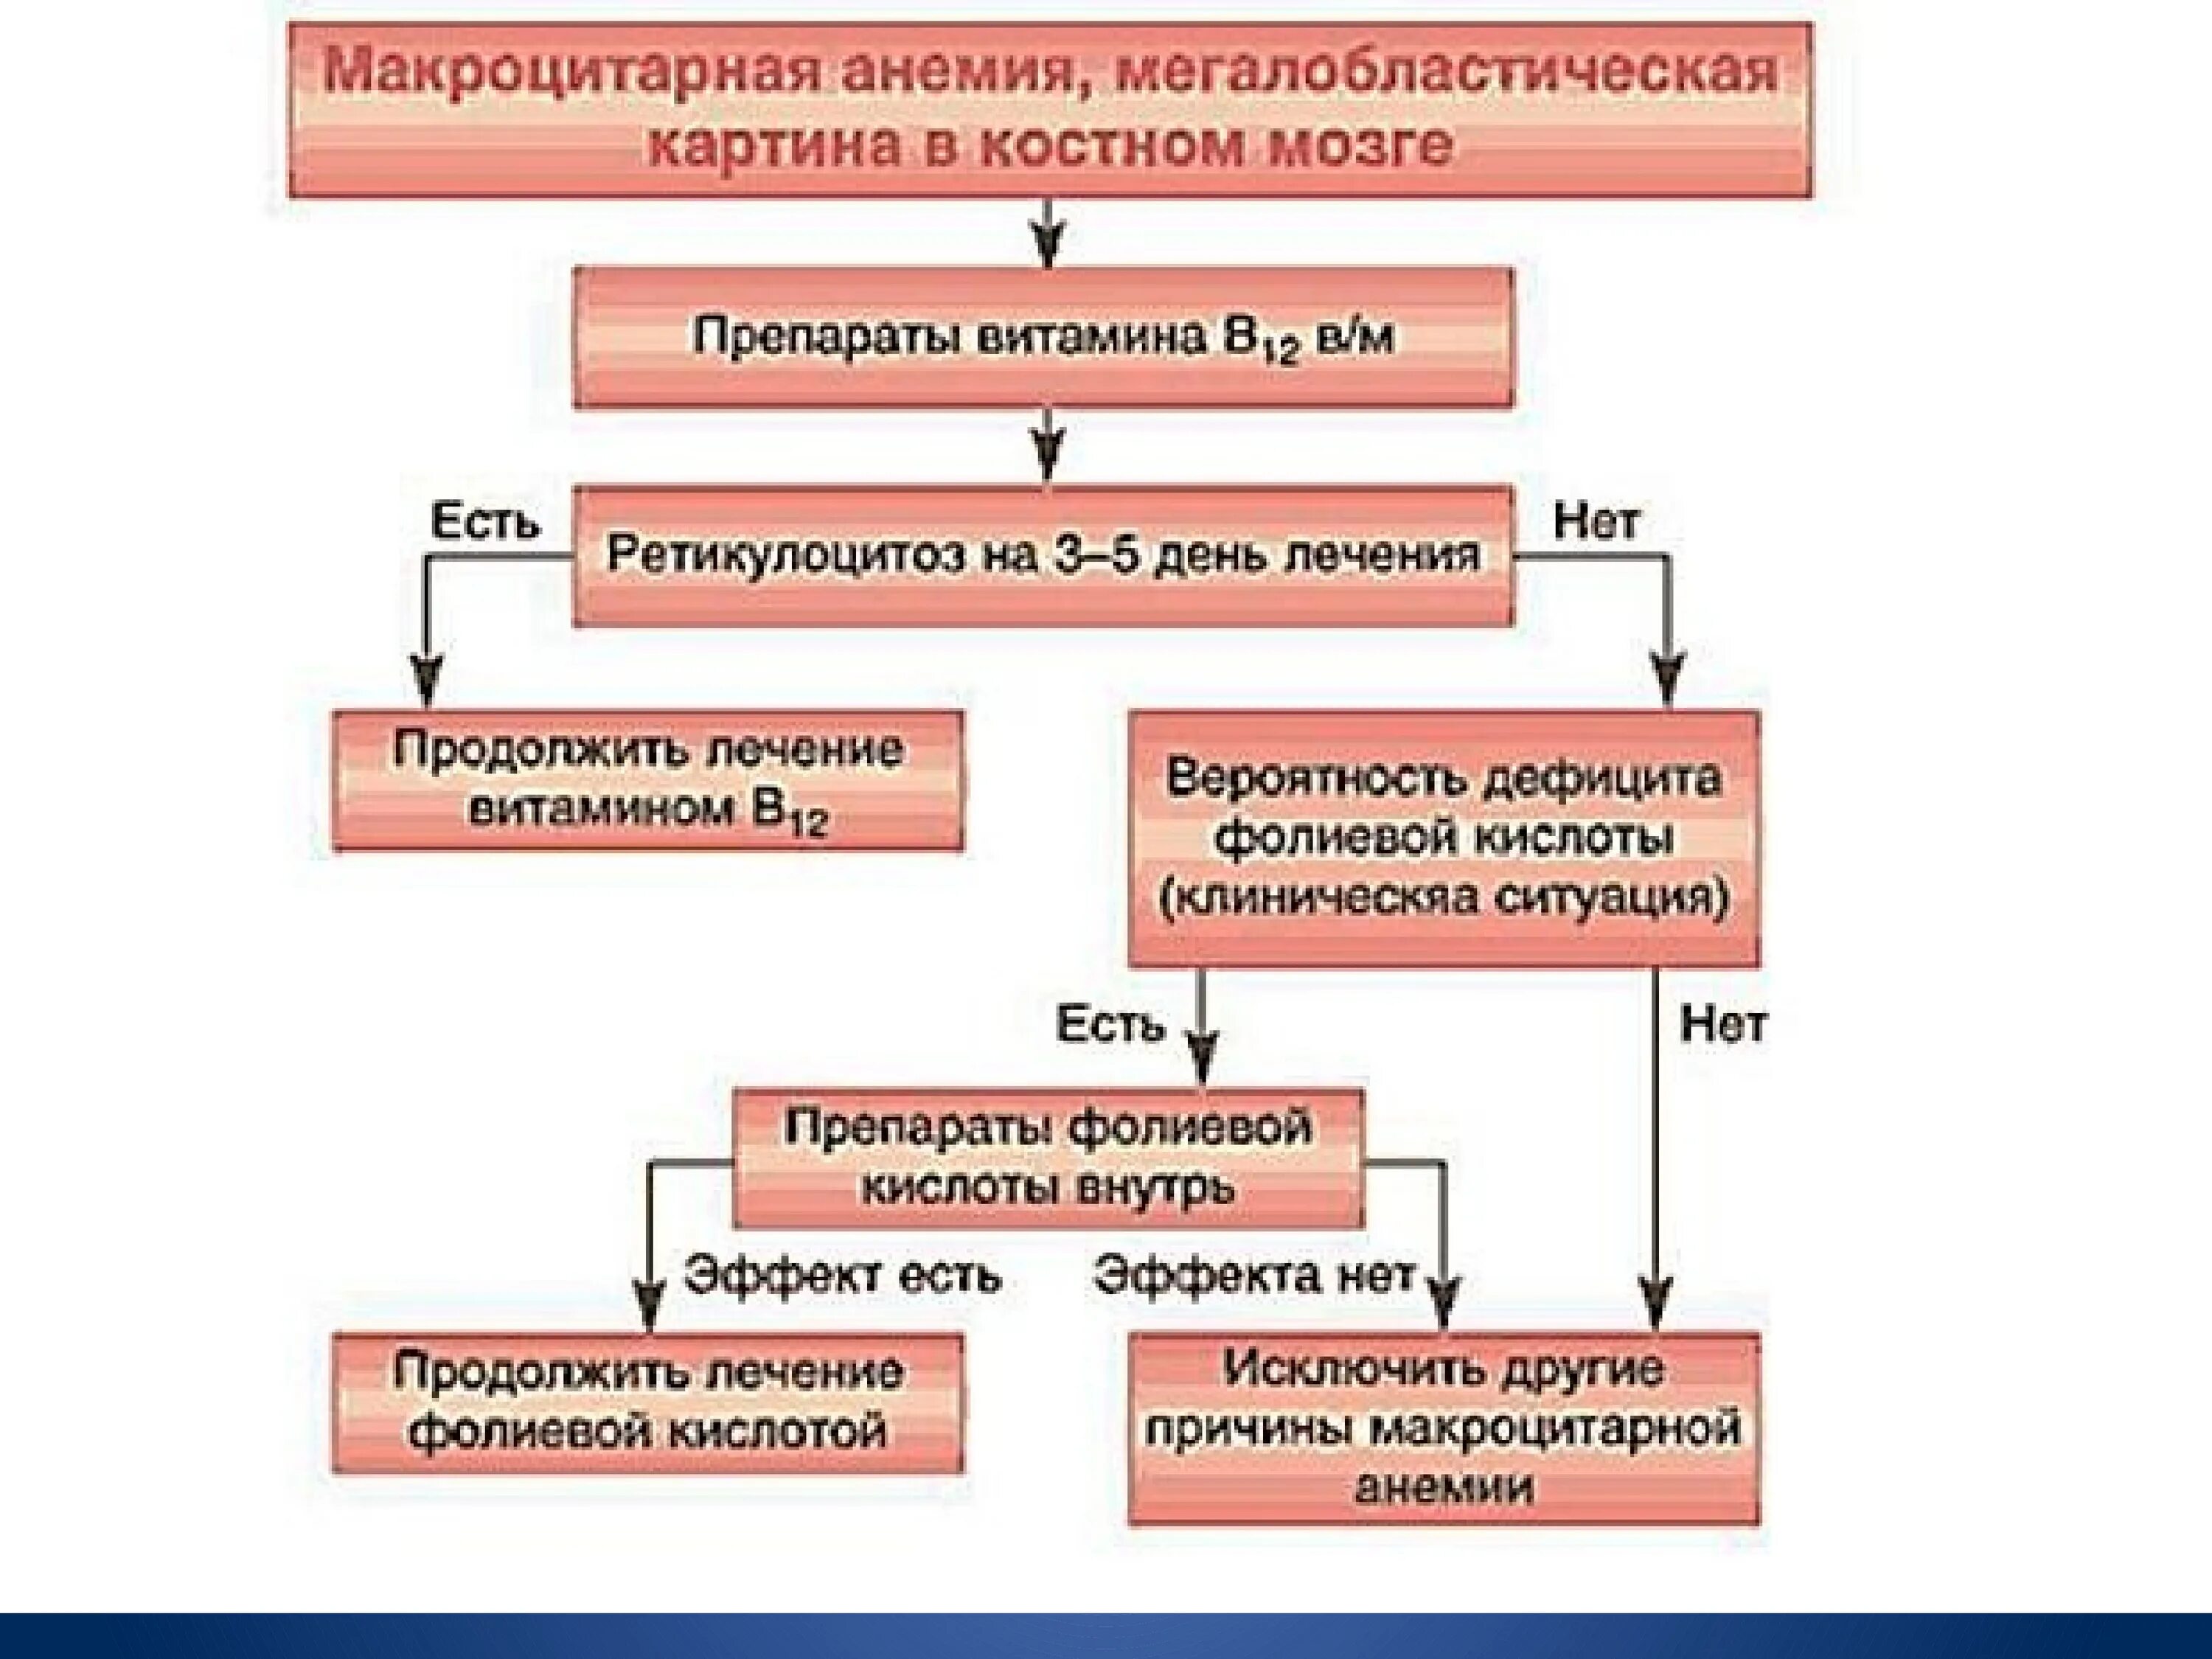 Механизм развития макроцитарной анемии. Схема терапии железодефицитной анемии. Алгоритм диагностики гемолитических анемий. Алгоритм диагностики железодефицитной анемии.